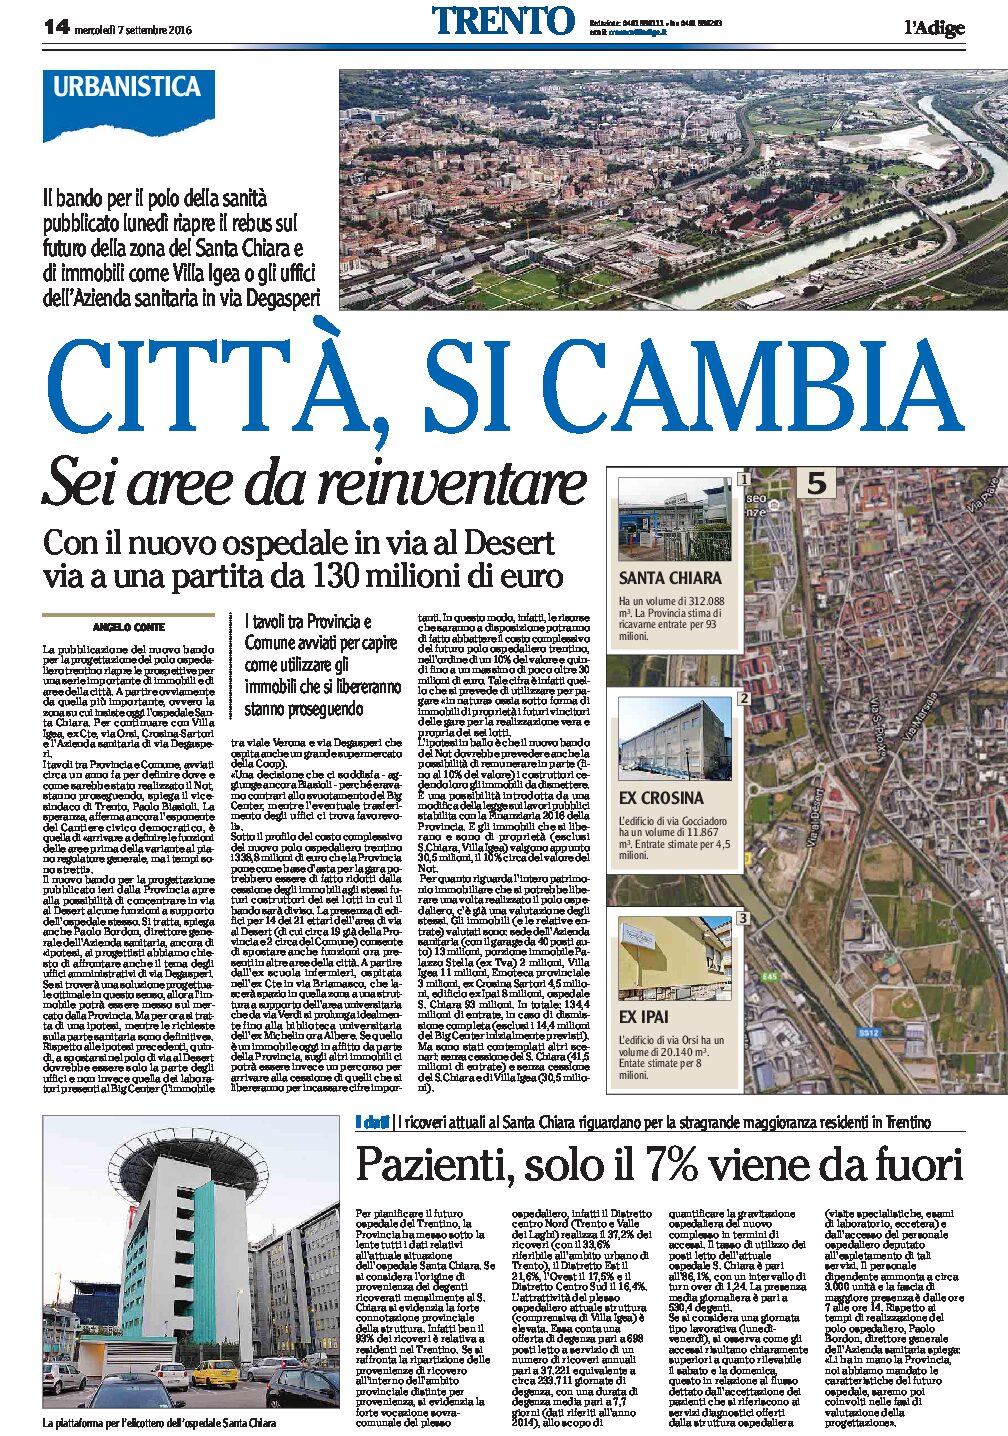 Trento: sei aree della città da reinventare